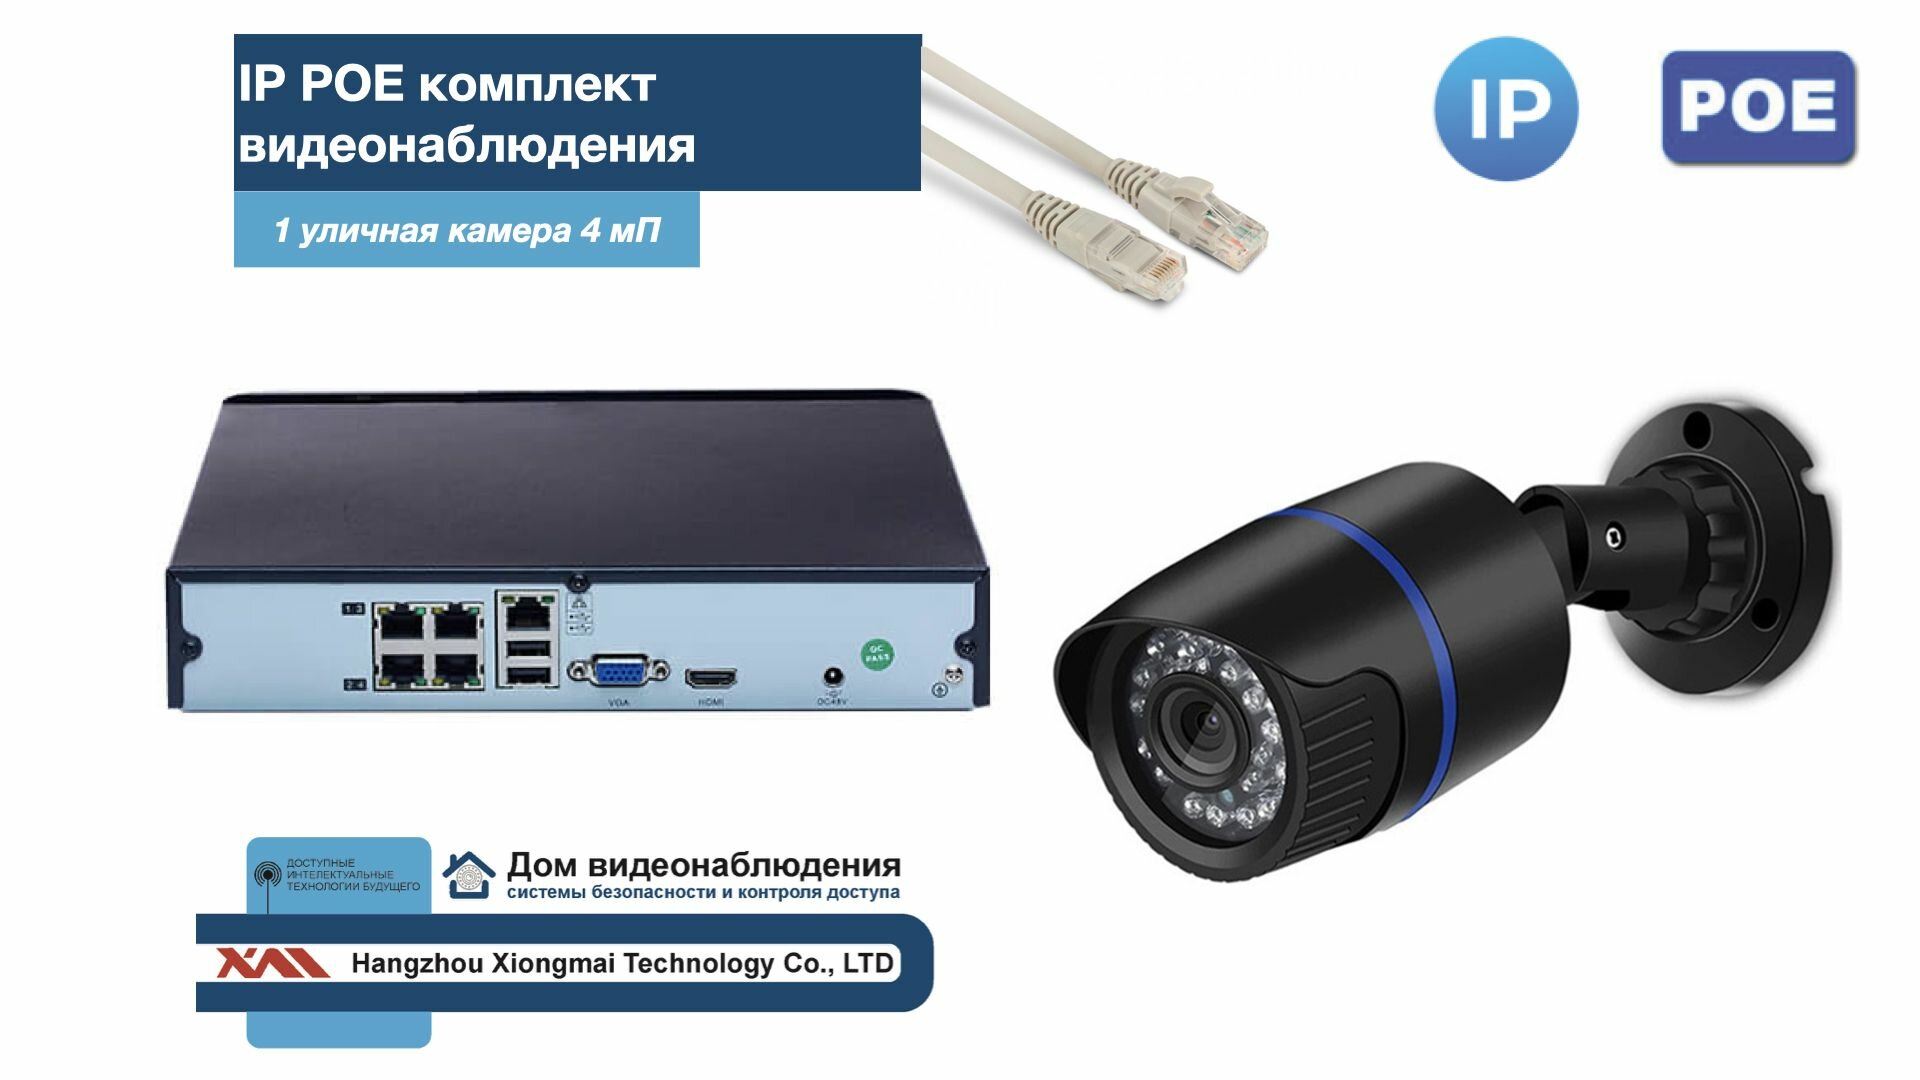 Полный IP POE комплект видеонаблюдения на 1 камеру (KIT1IPPOE100B4MP-2)